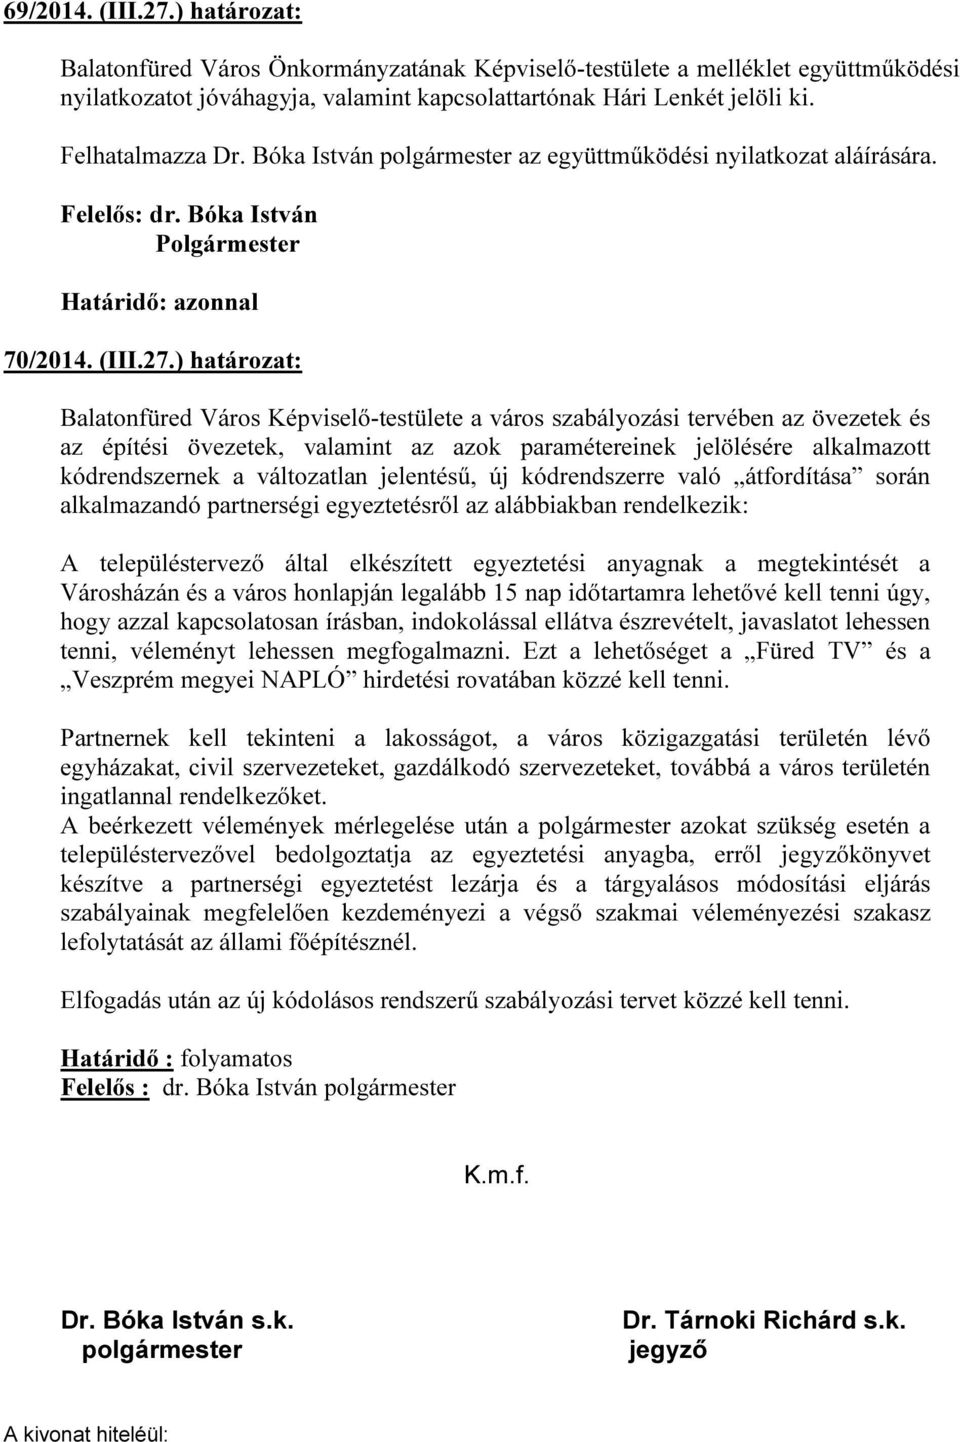 ) határozat: Balatonfüred Város Képviselő-testülete a város szabályozási tervében az övezetek és az építési övezetek, valamint az azok paramétereinek jelölésére alkalmazott kódrendszernek a